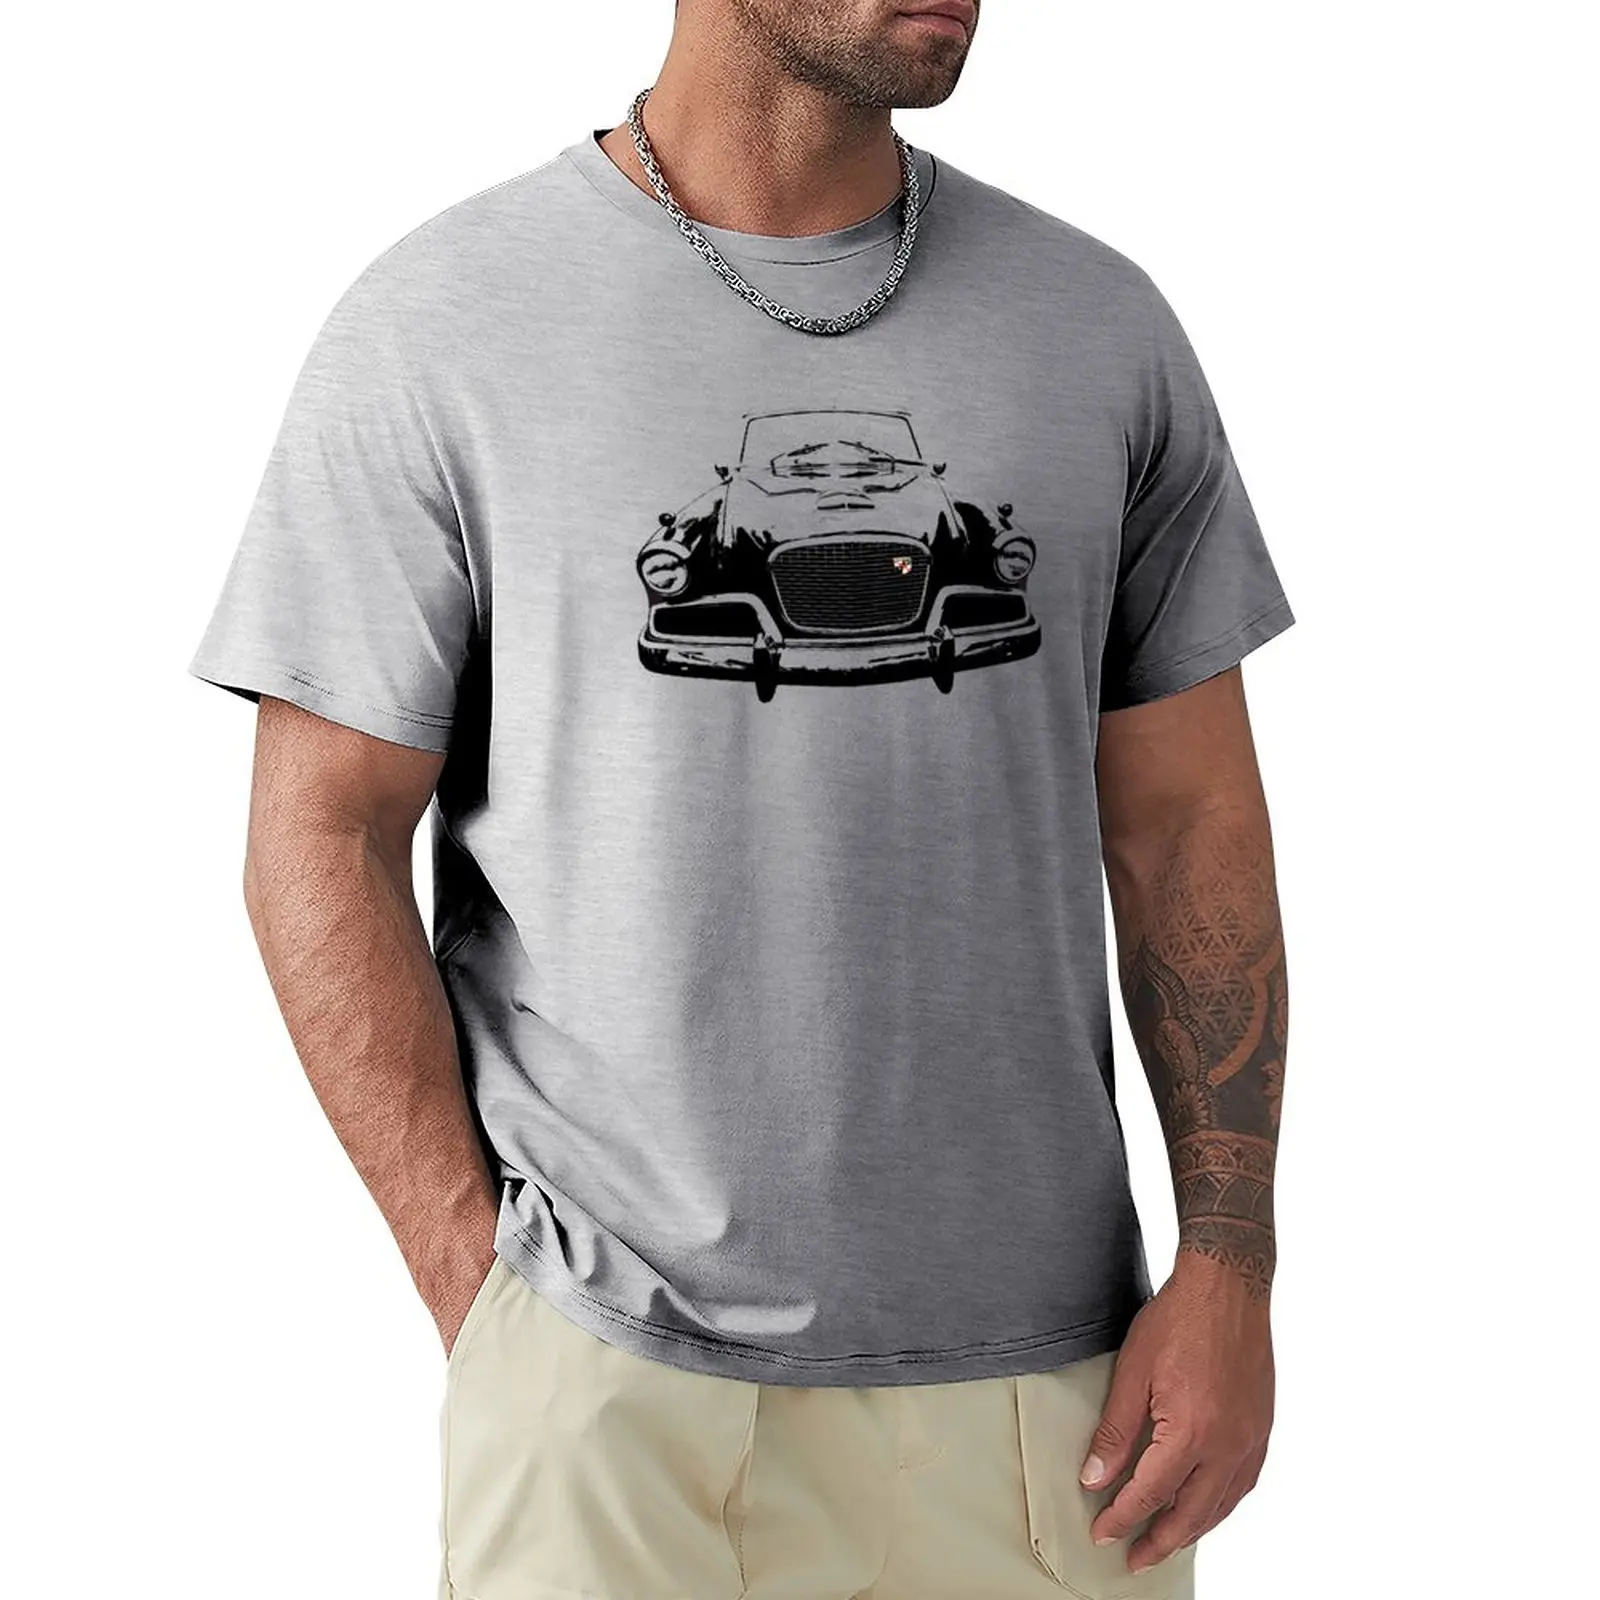 Studebaker Golden Hawk, моноблок американски класически автомобил на 1950-те, черна тениска, спортни ризи, тениски по поръчка, мъжки спортни ризи